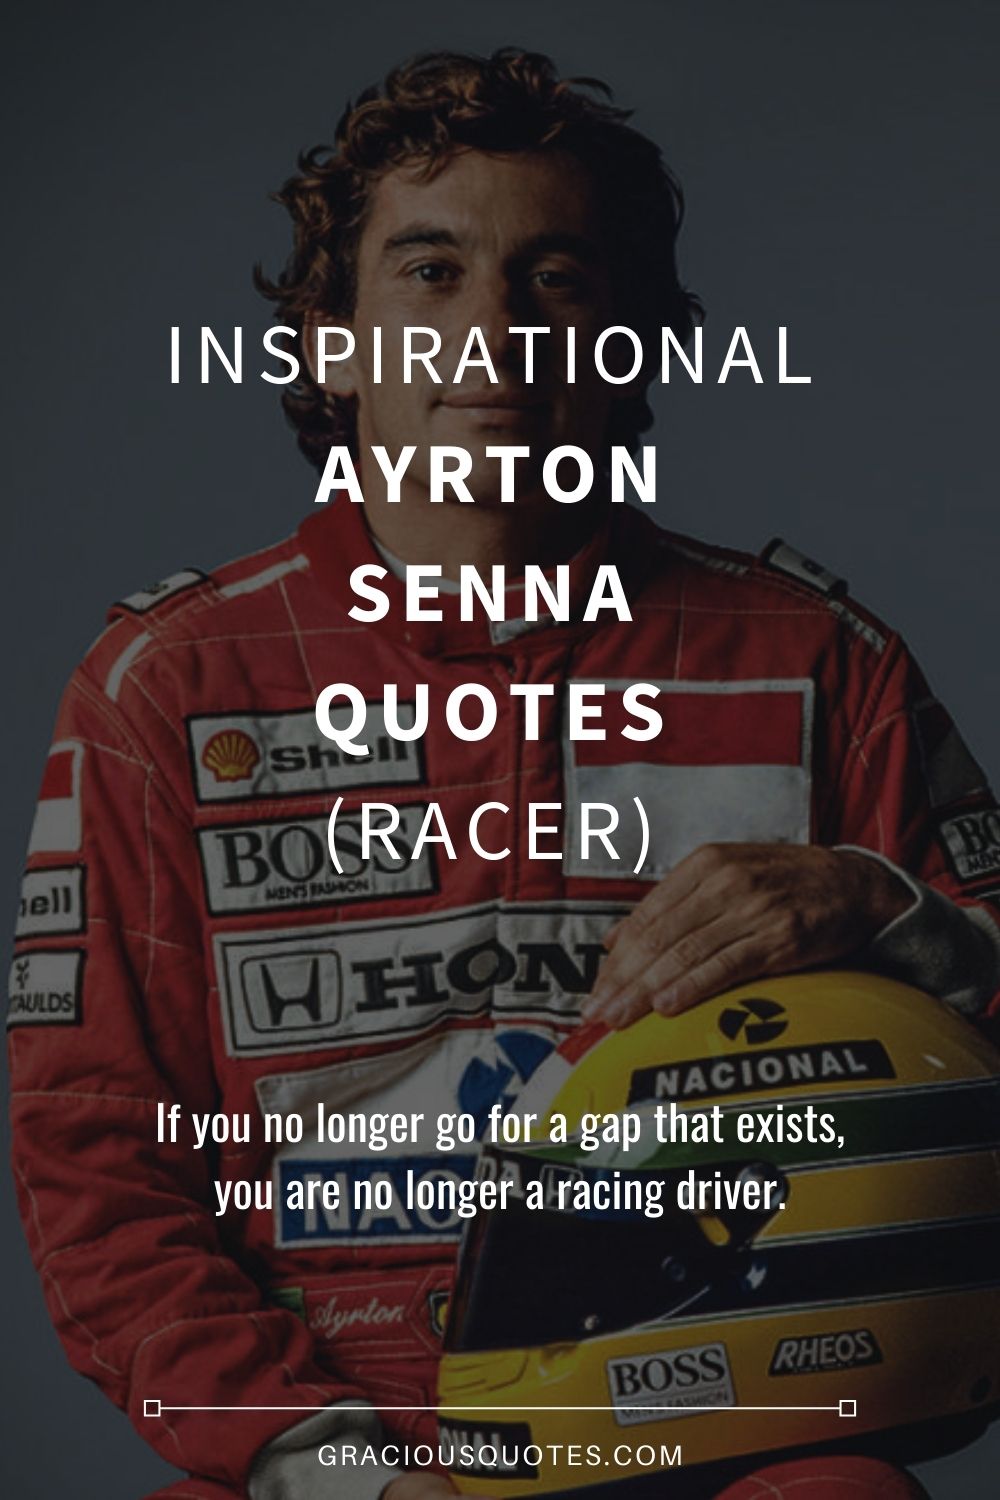 Inspirational Ayrton Senna Quotes (RACER) - Gracious Quotes